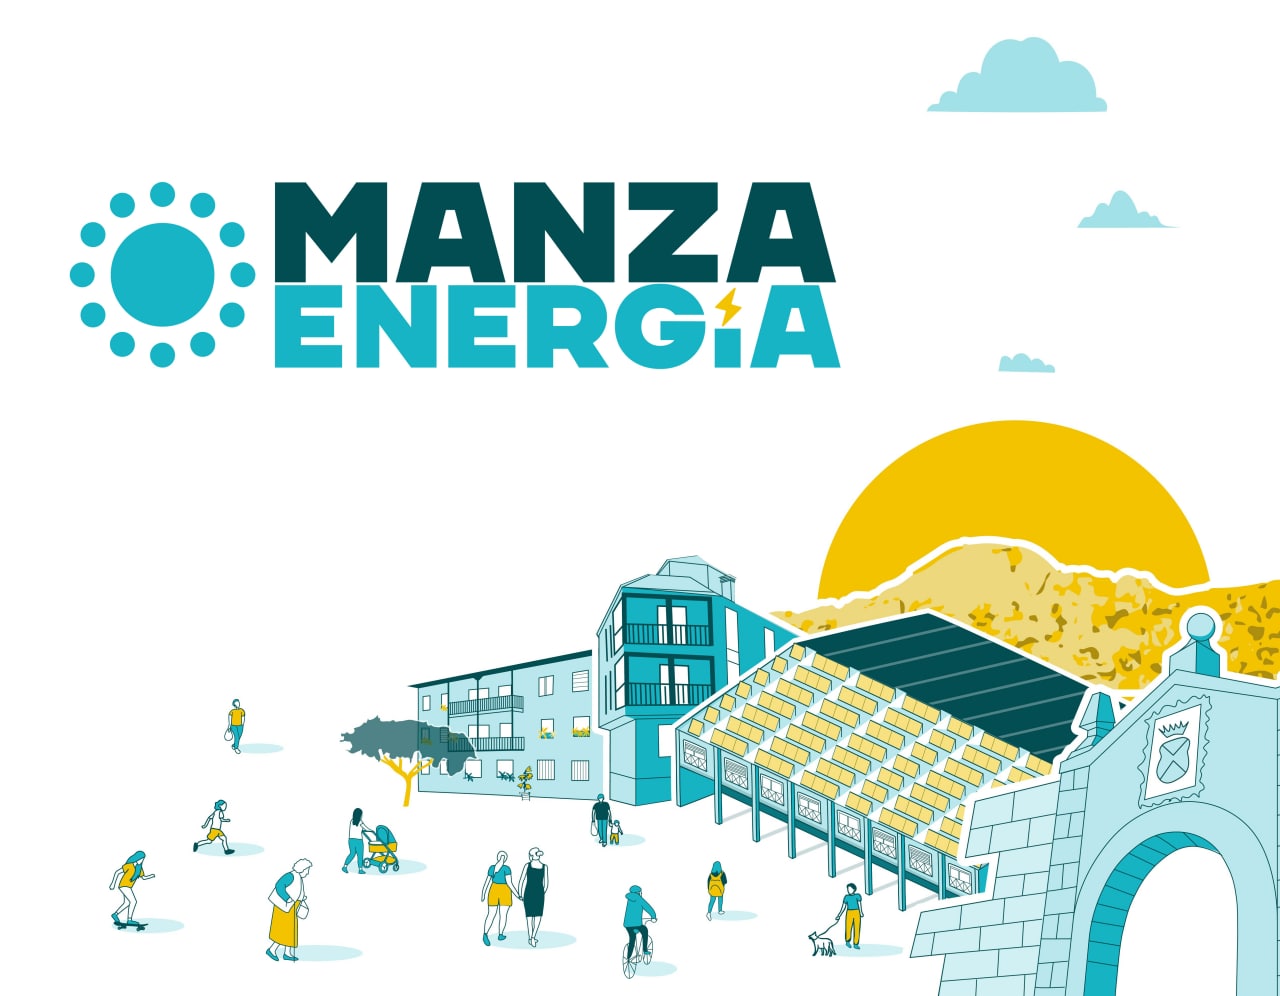 ManzaEnerga: la energa de un pueblo